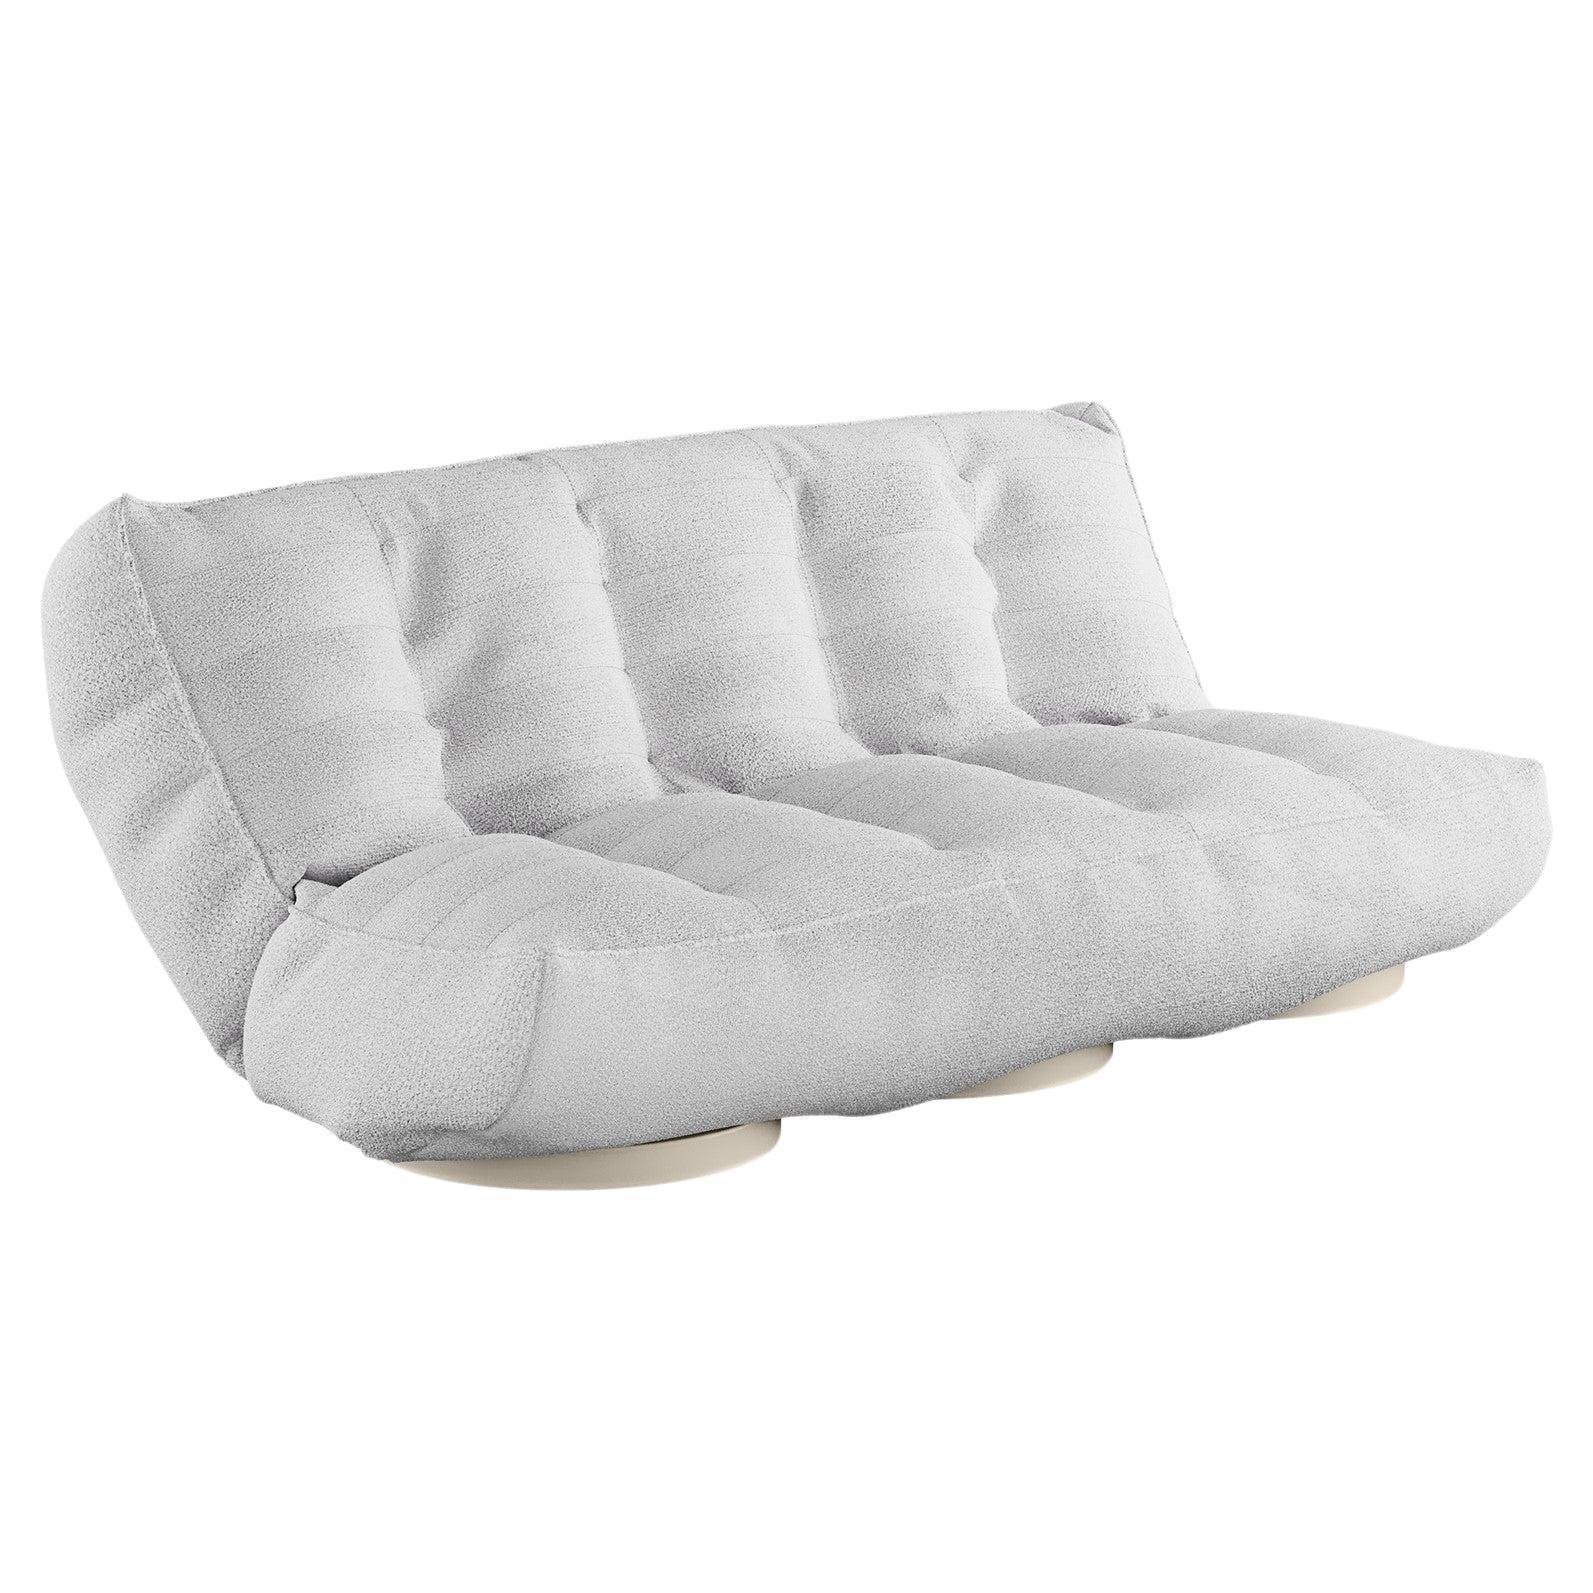 Sofá de exterior moderno Daybed blanco plegable tapizado en tela de exterior arena en venta